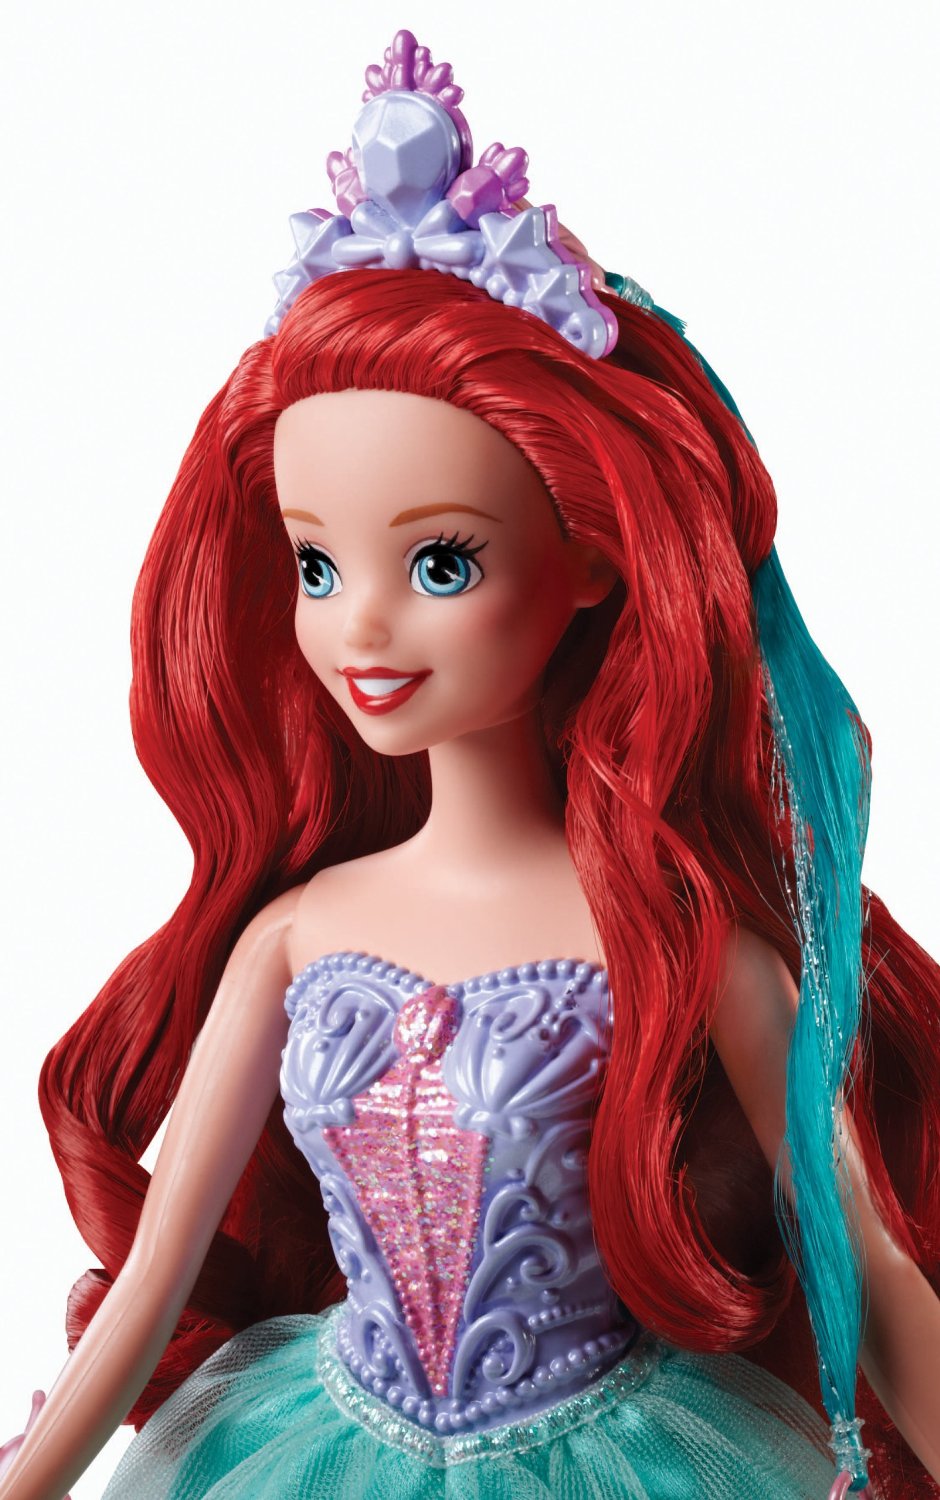 Кукла Disney Princess "Модные прически" - Ариэль купить в интернет-магазине MegaToys24.ru недорого.